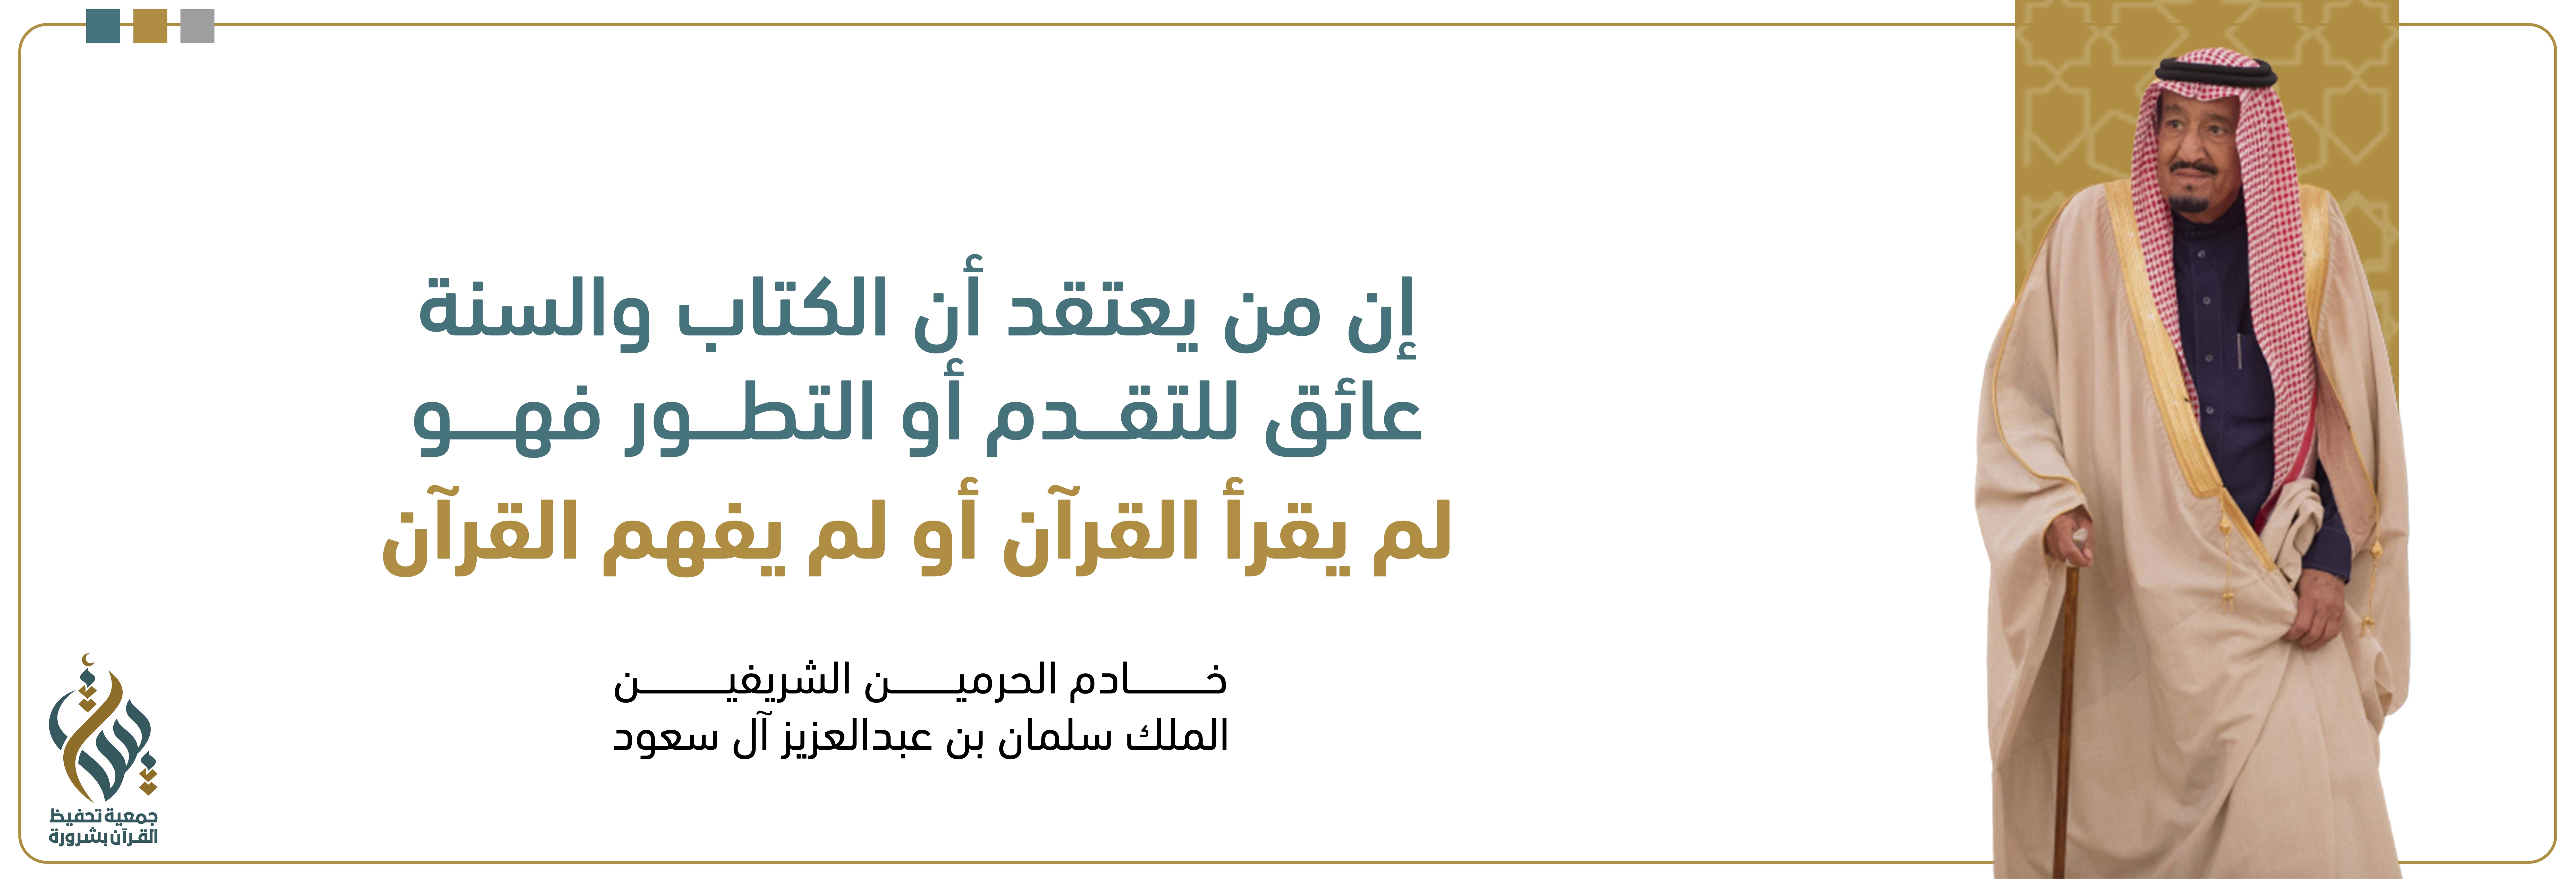 الجمعية الخيرية لتحفيظ القرآن الكريم بمحافظة شرورة (بينات)